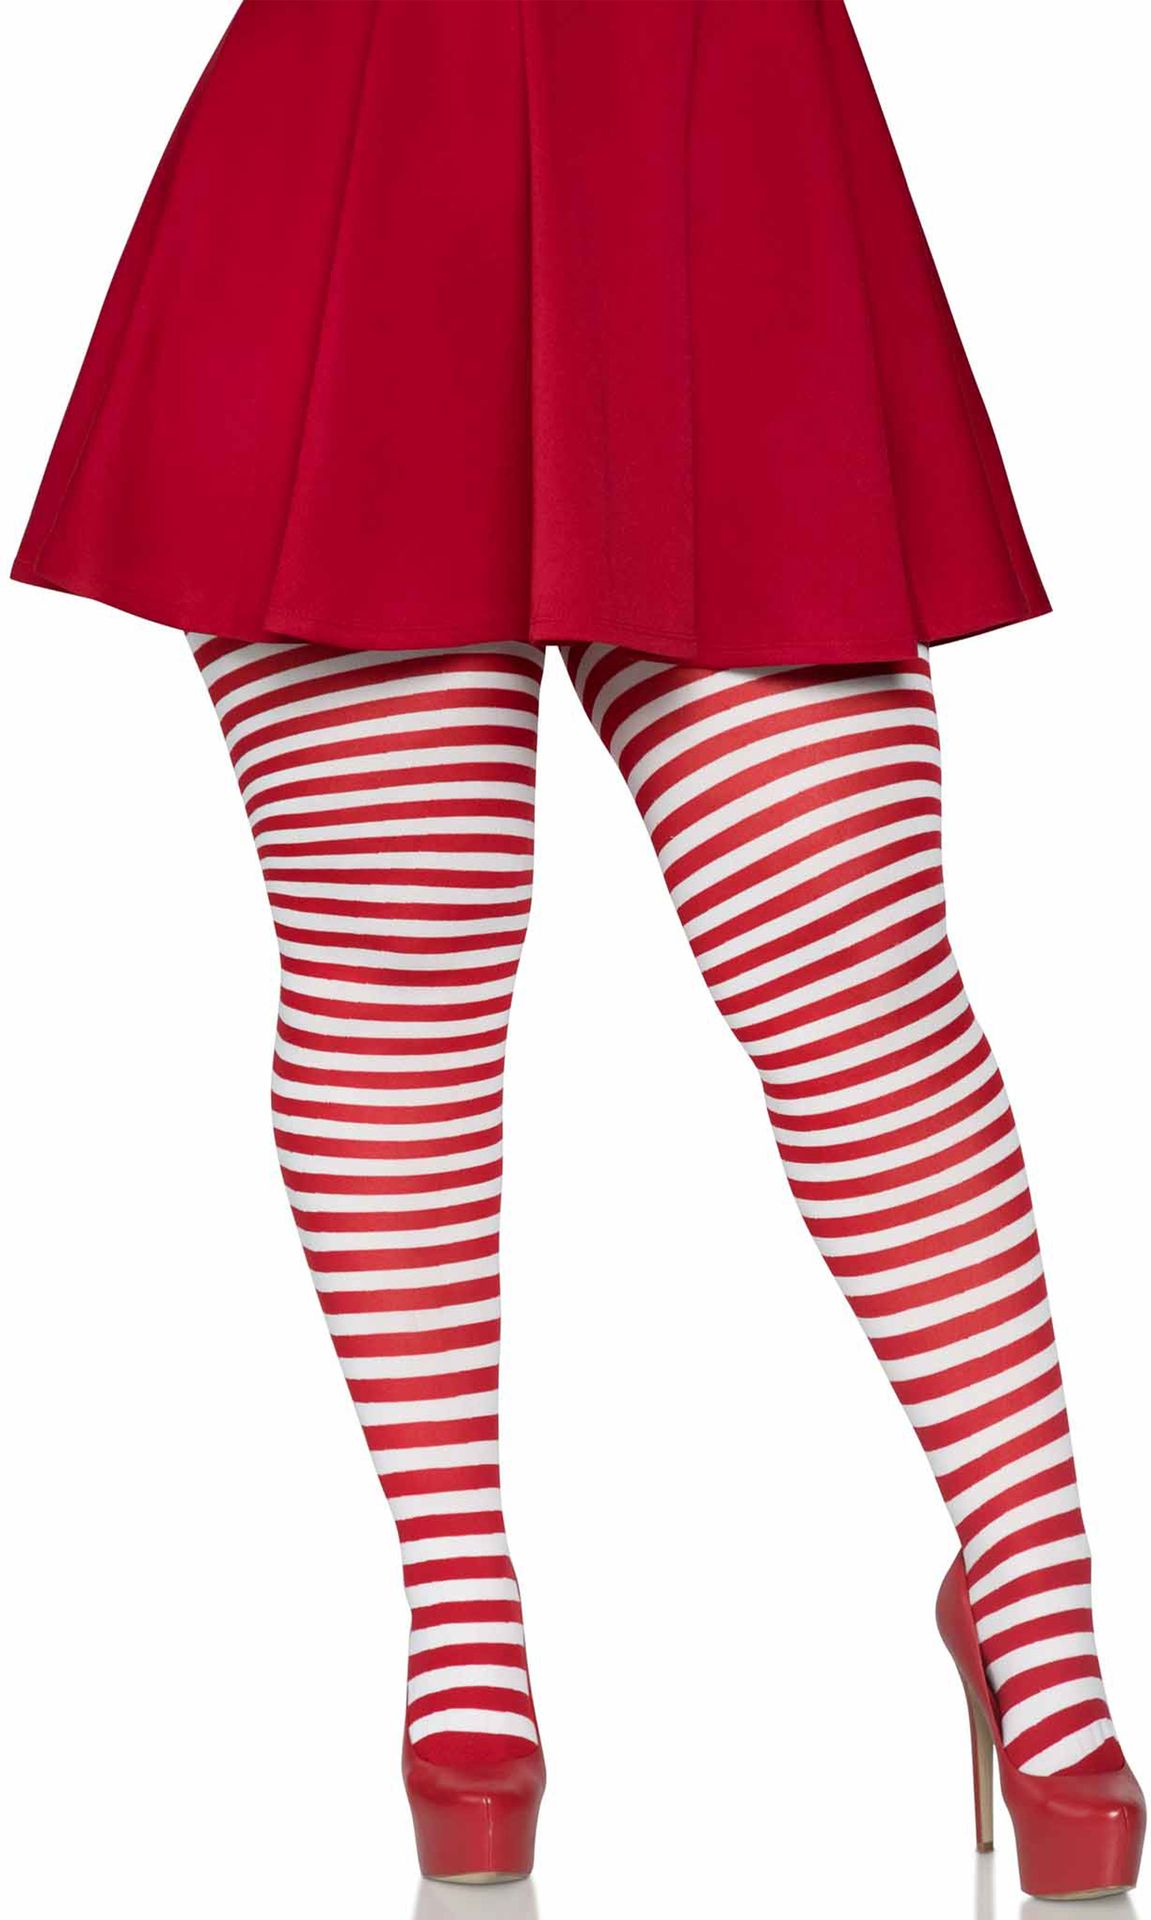 regel Voortdurende Zending Rood wit gestreepte panty plus size | Carnavalskleding.nl